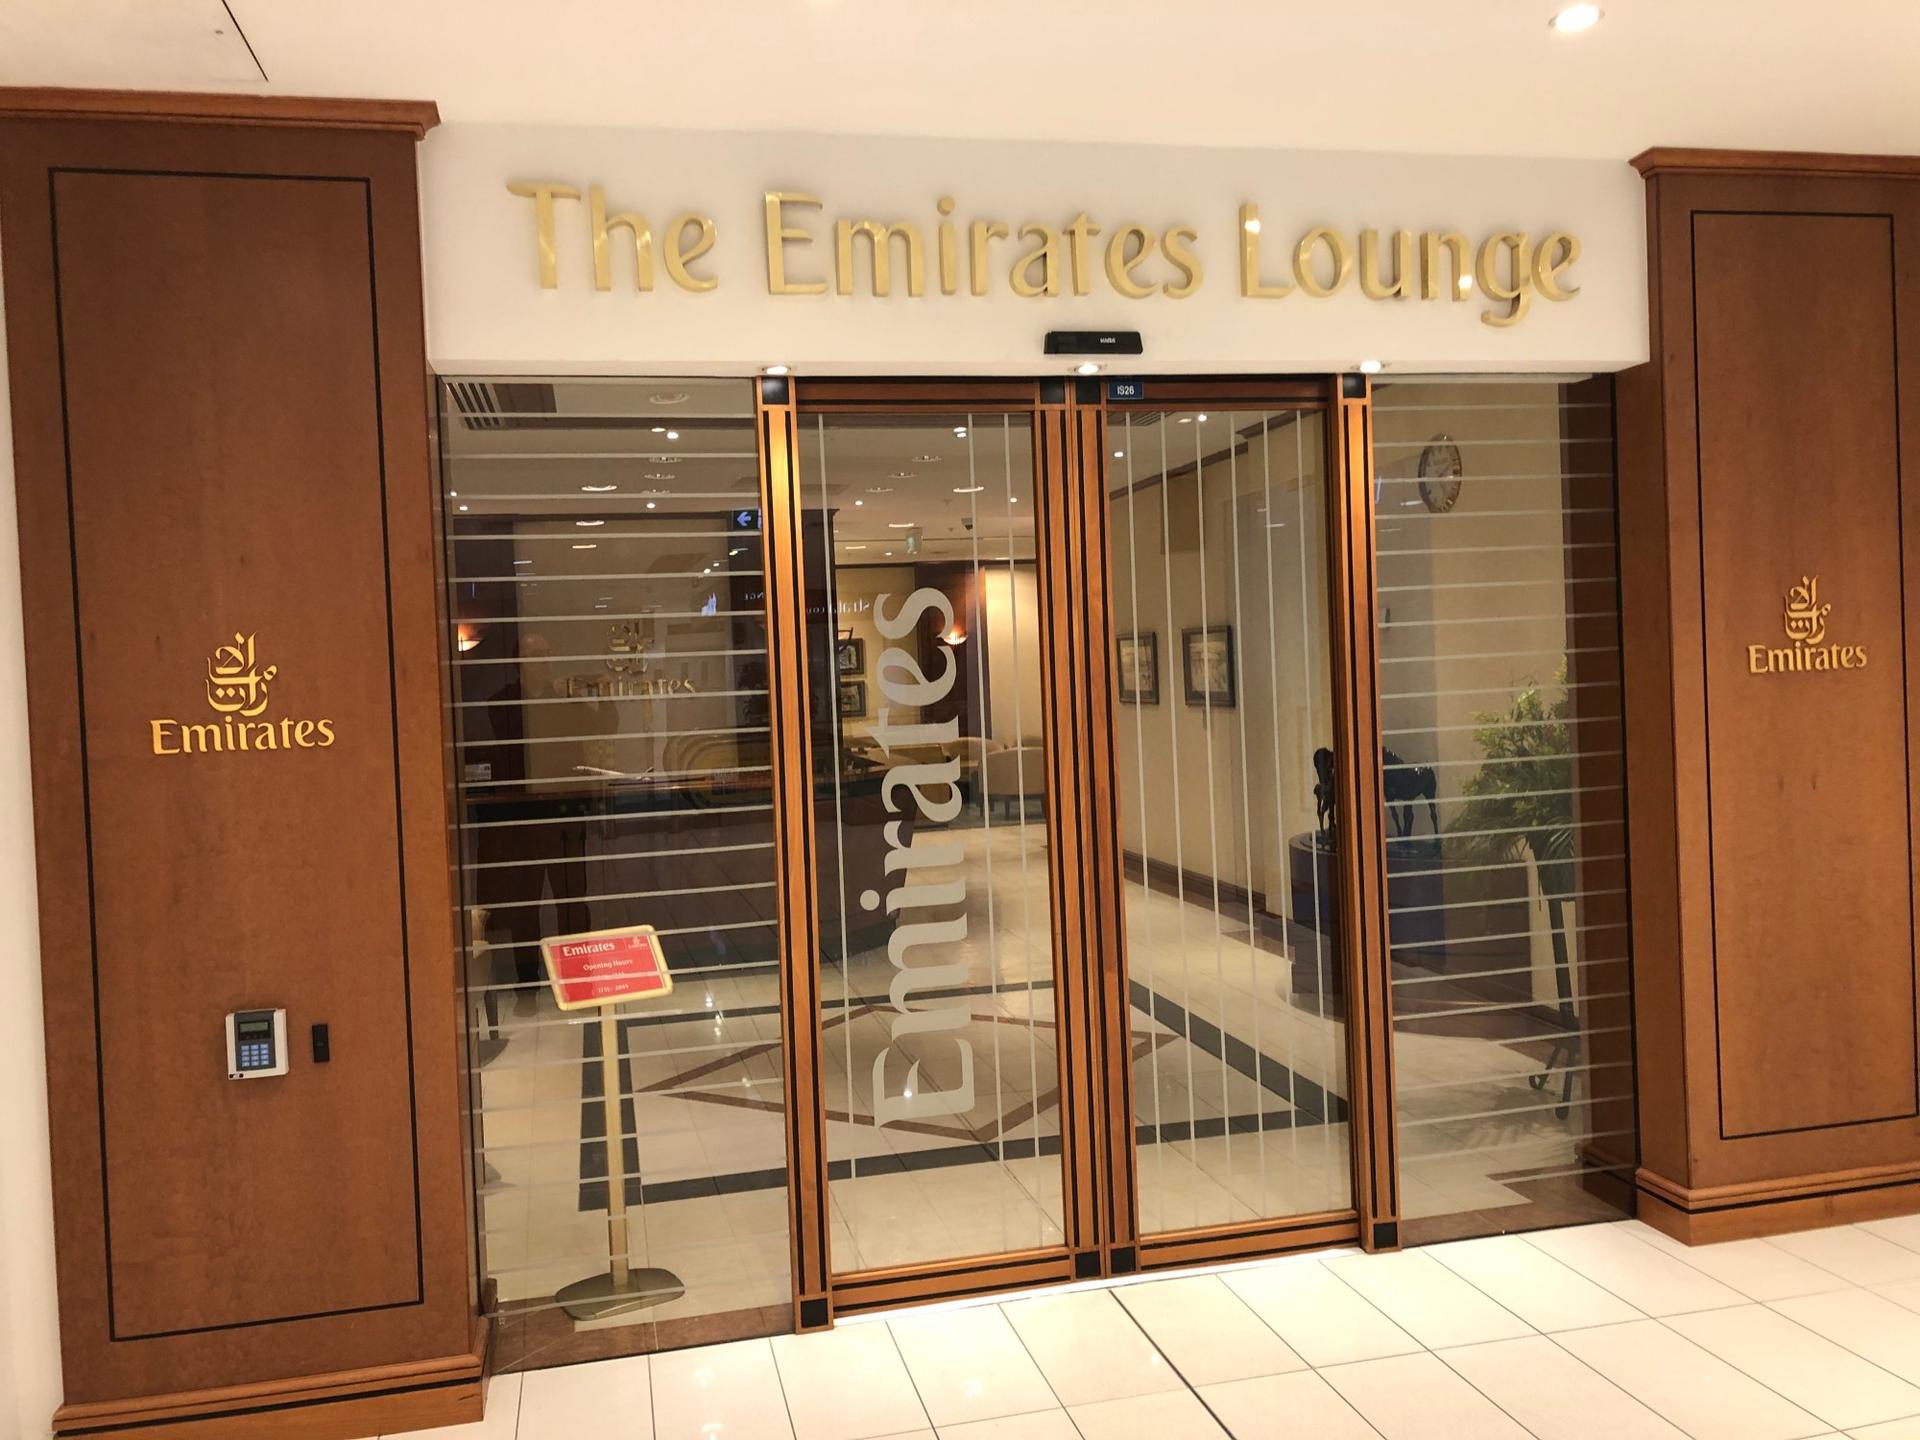 The Emirates Lounge  image 8 of 8